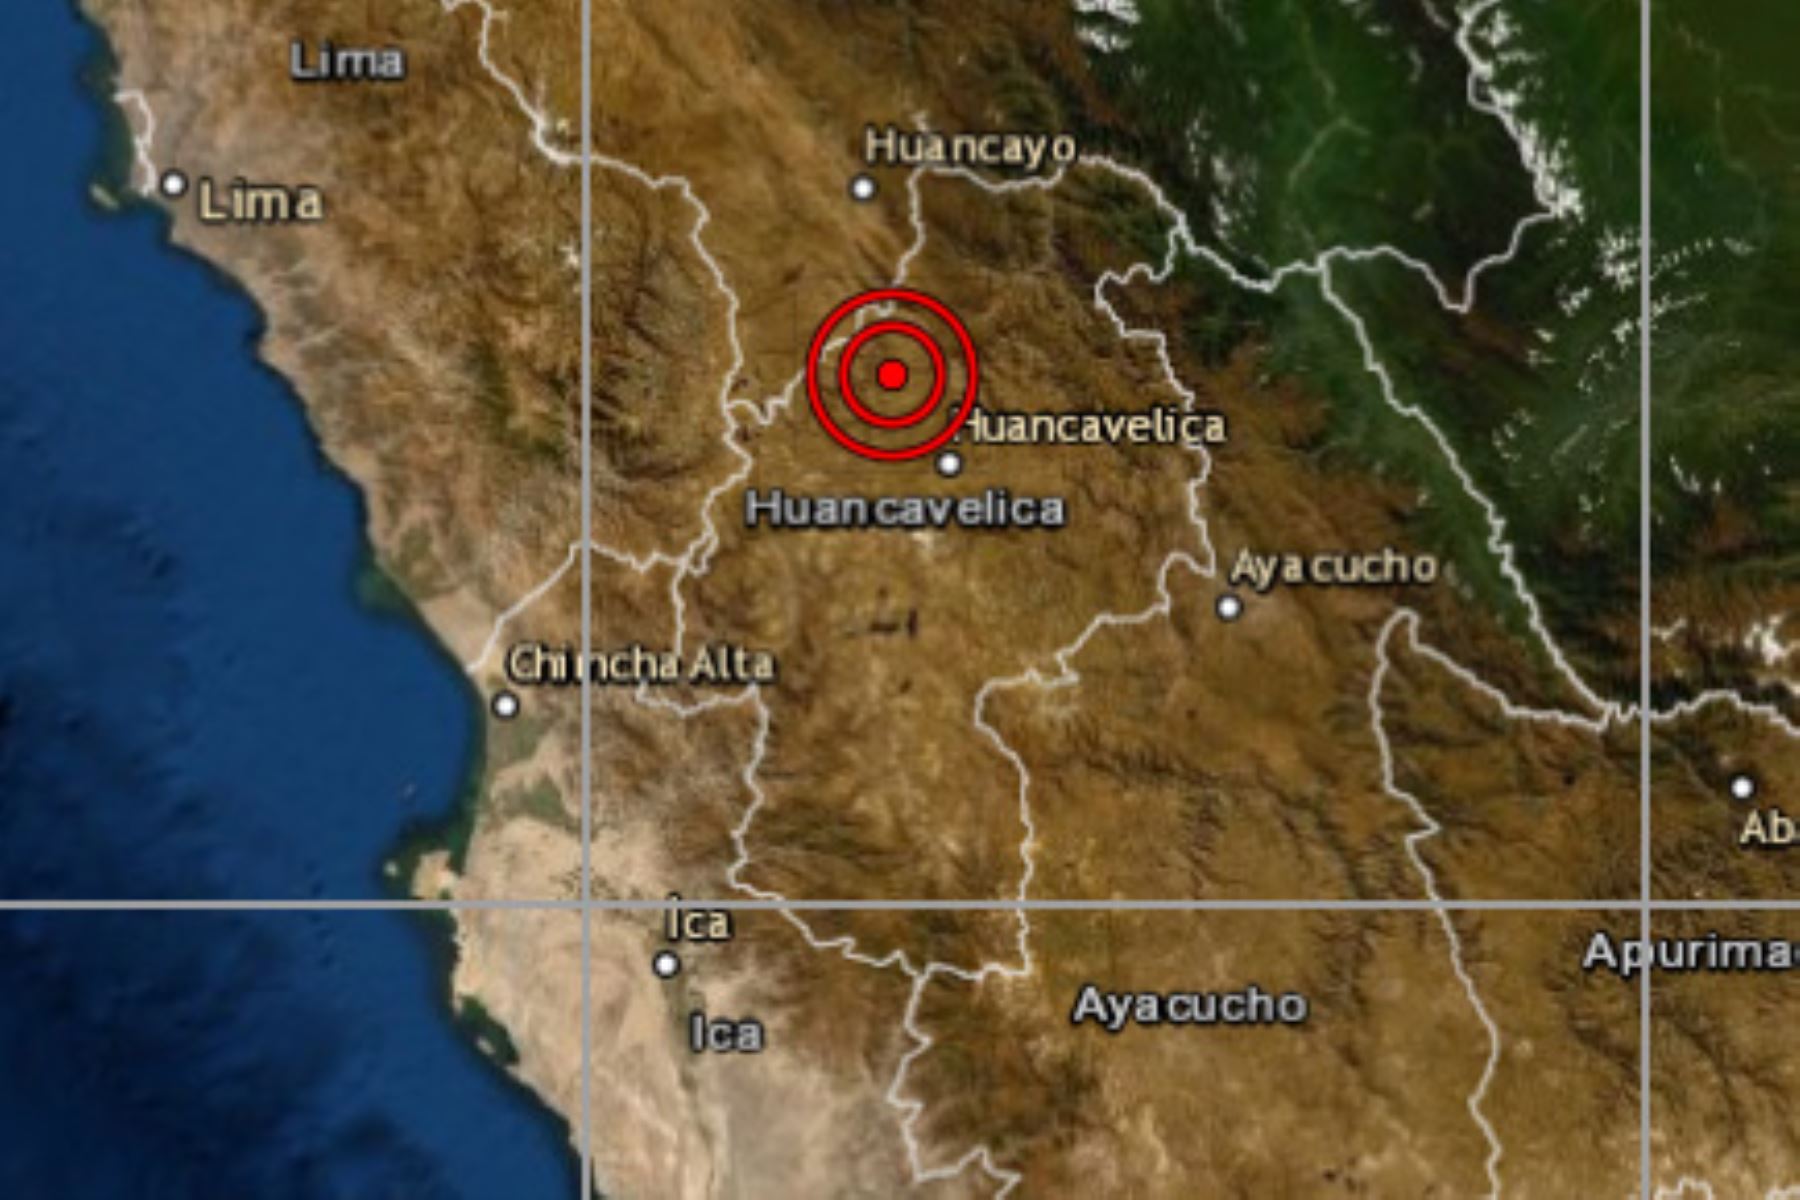 A las 17:59 horas ocurrió un sismo a 13 kilómetros al oeste del distrito de Conayca, región Huancavelica.